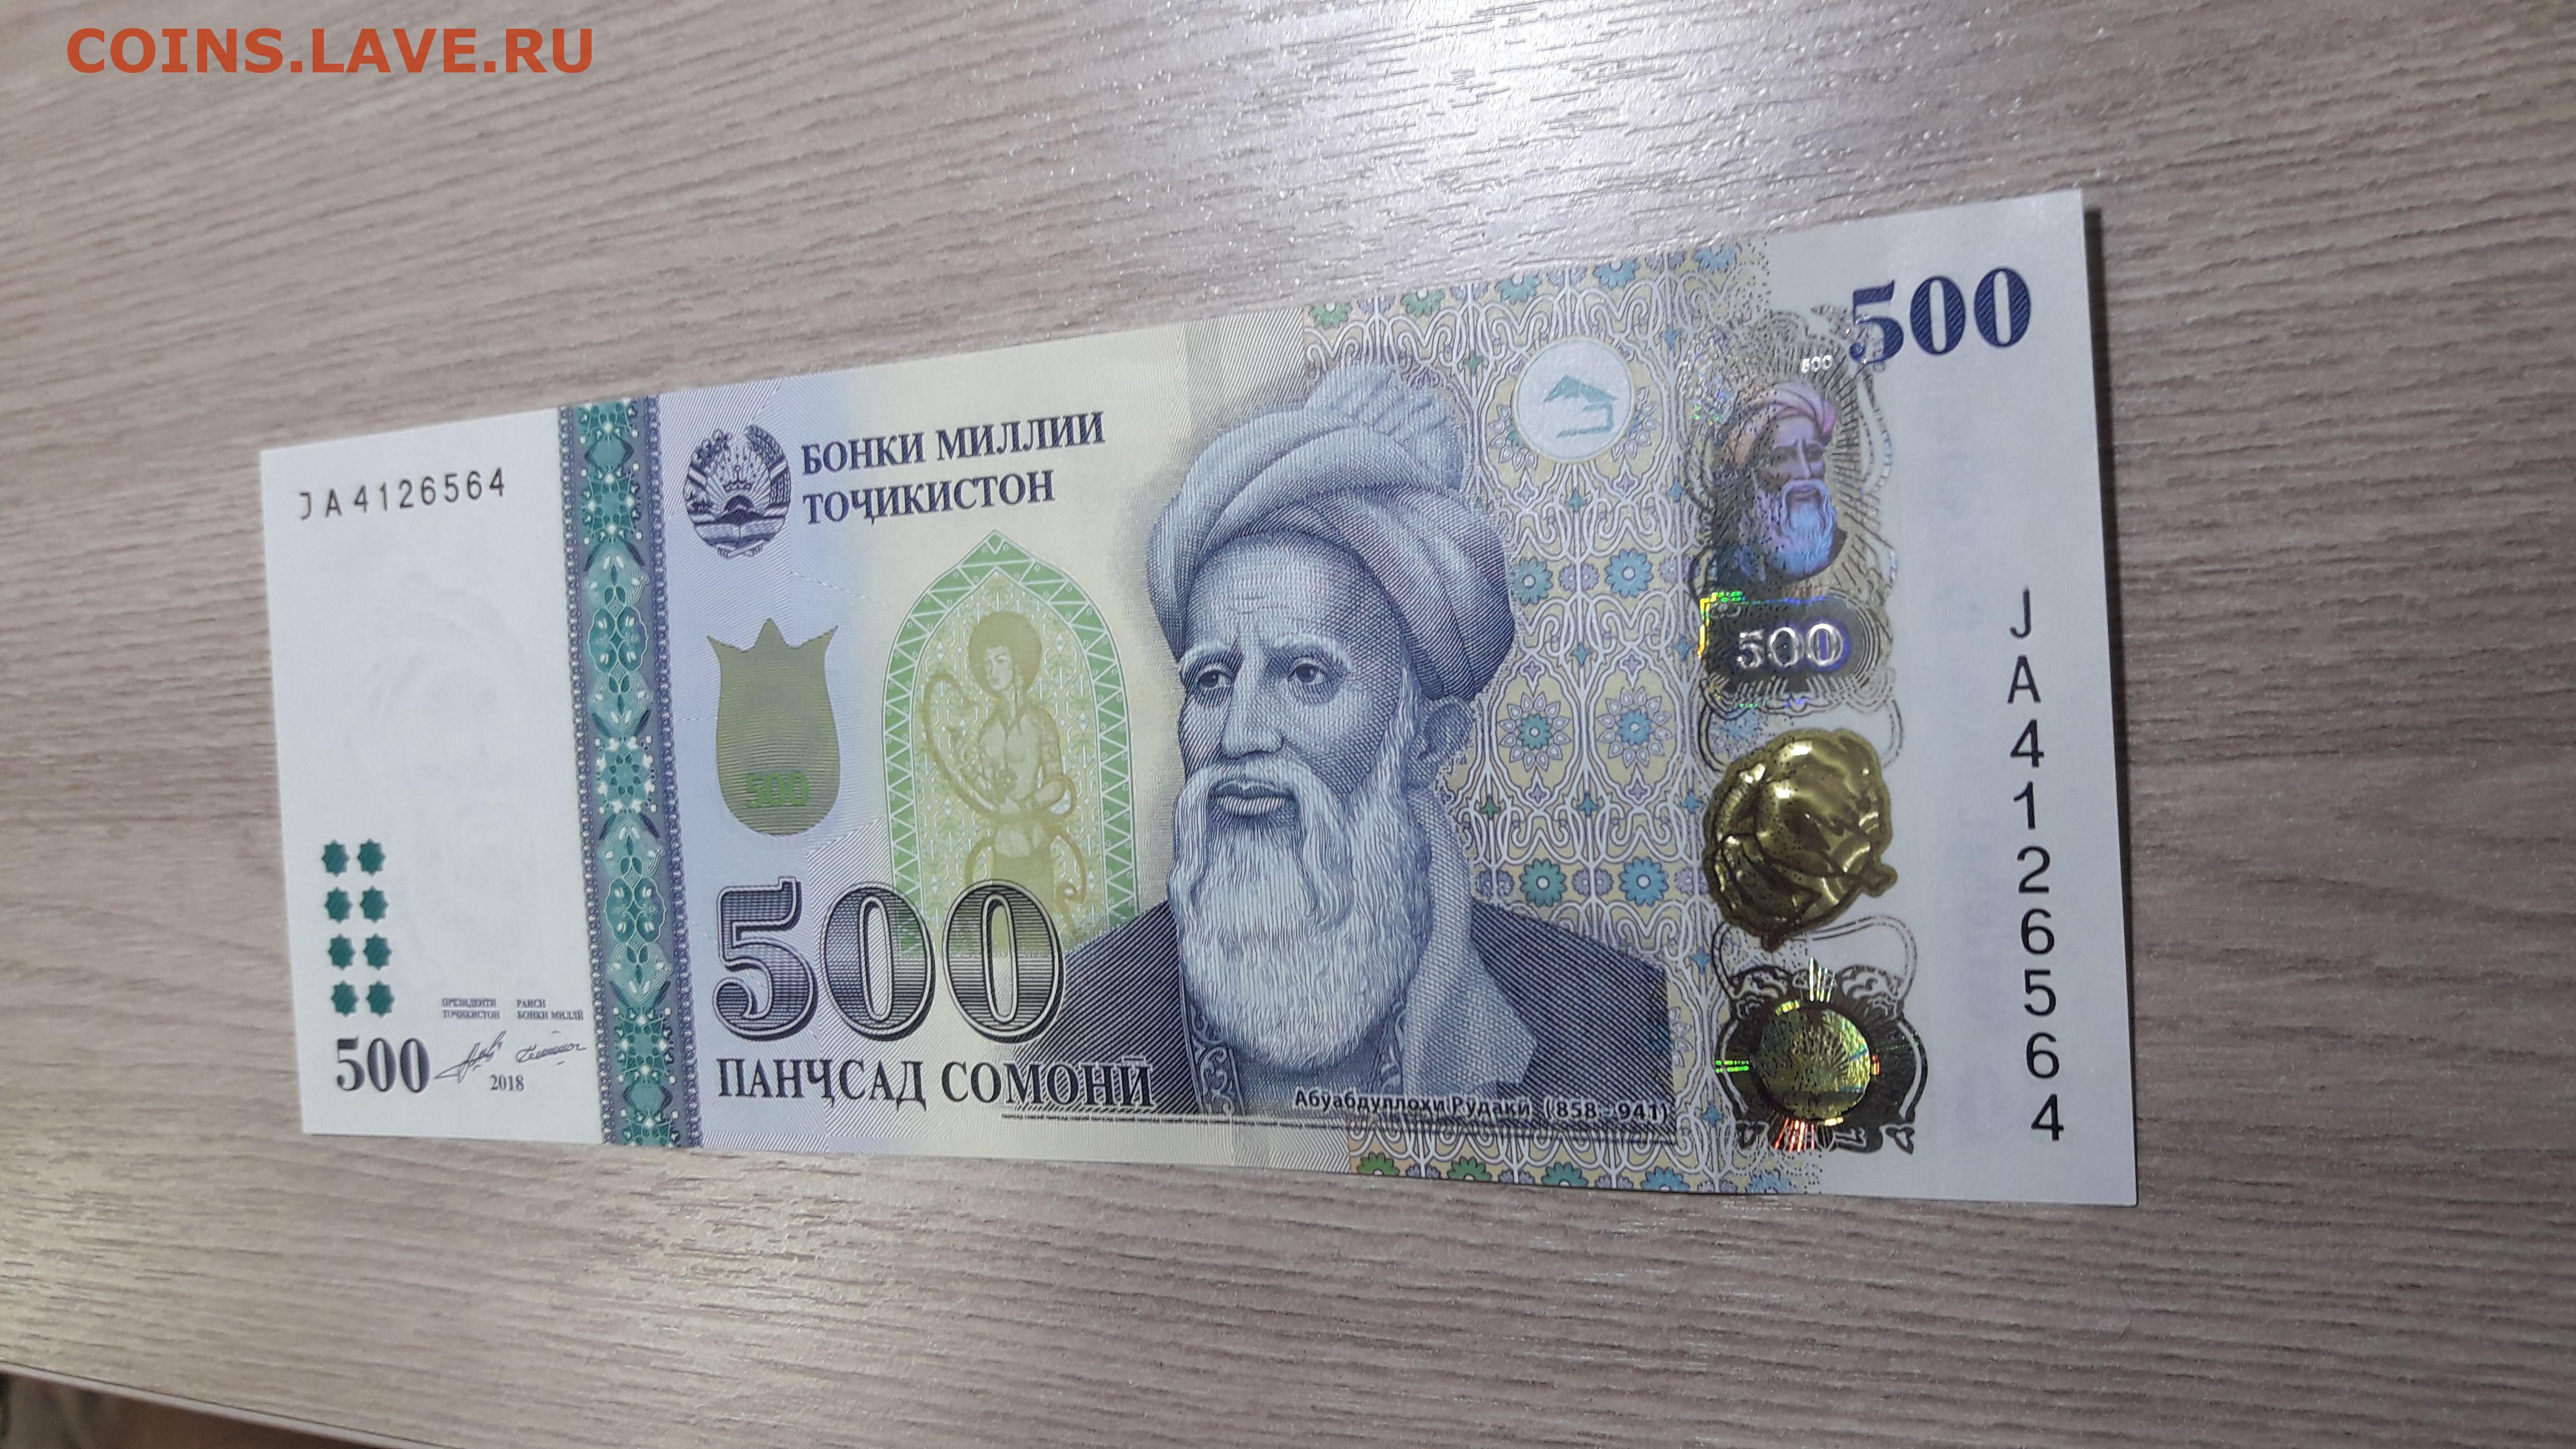 500 рублей в таджикистане. Таджикский купюры 500 Сомони. Деньги Таджикистана 500 Сомони. 1000 Сомона. Купюра 500 Сомони.